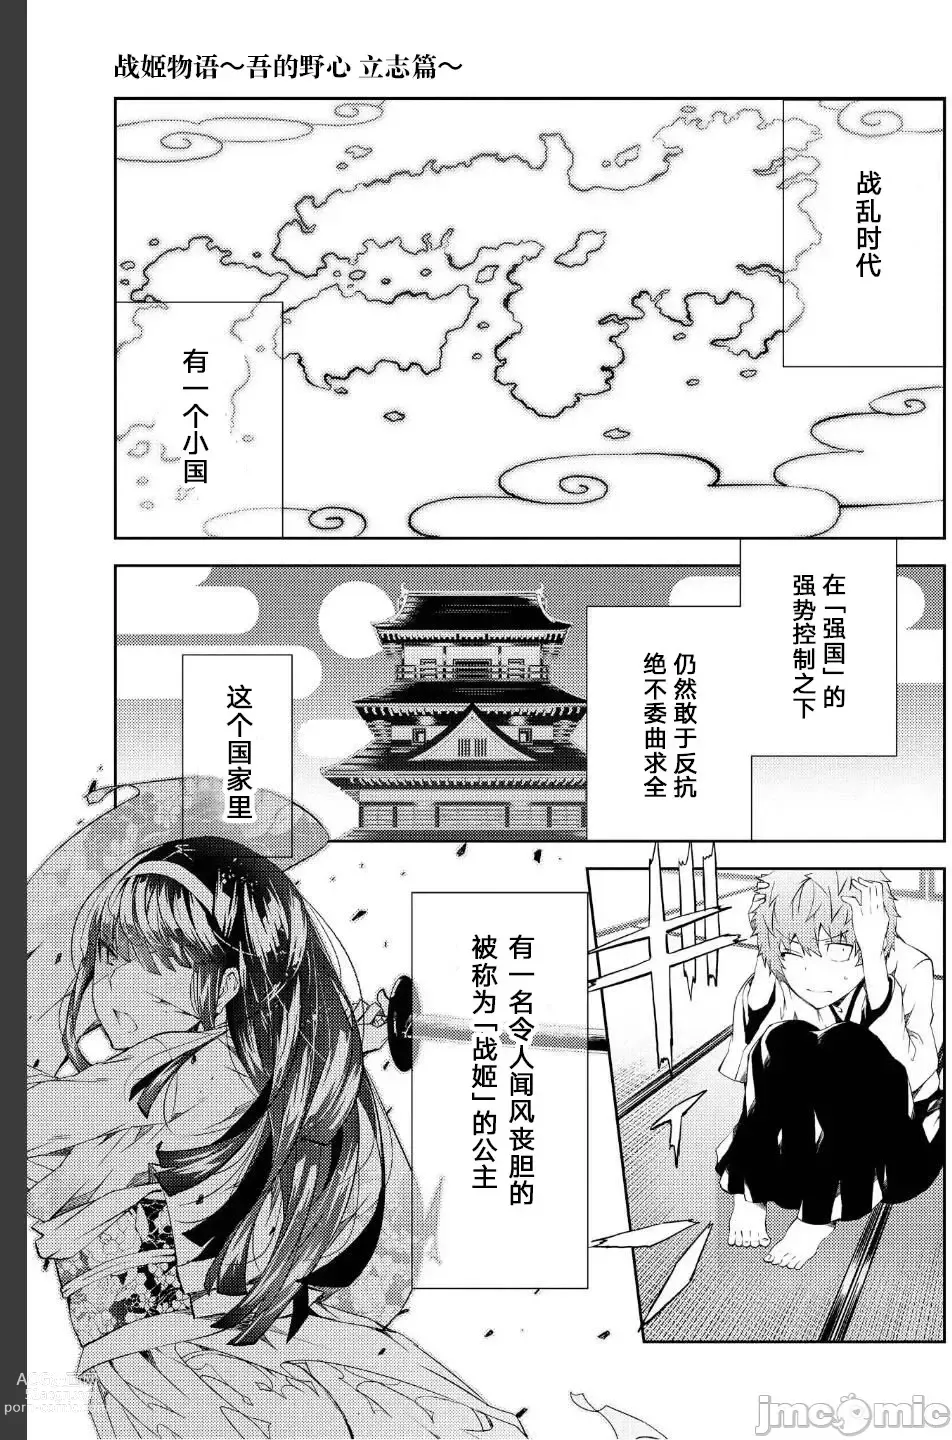 Page 1 of manga Battle Princess Story, my ambition chapter